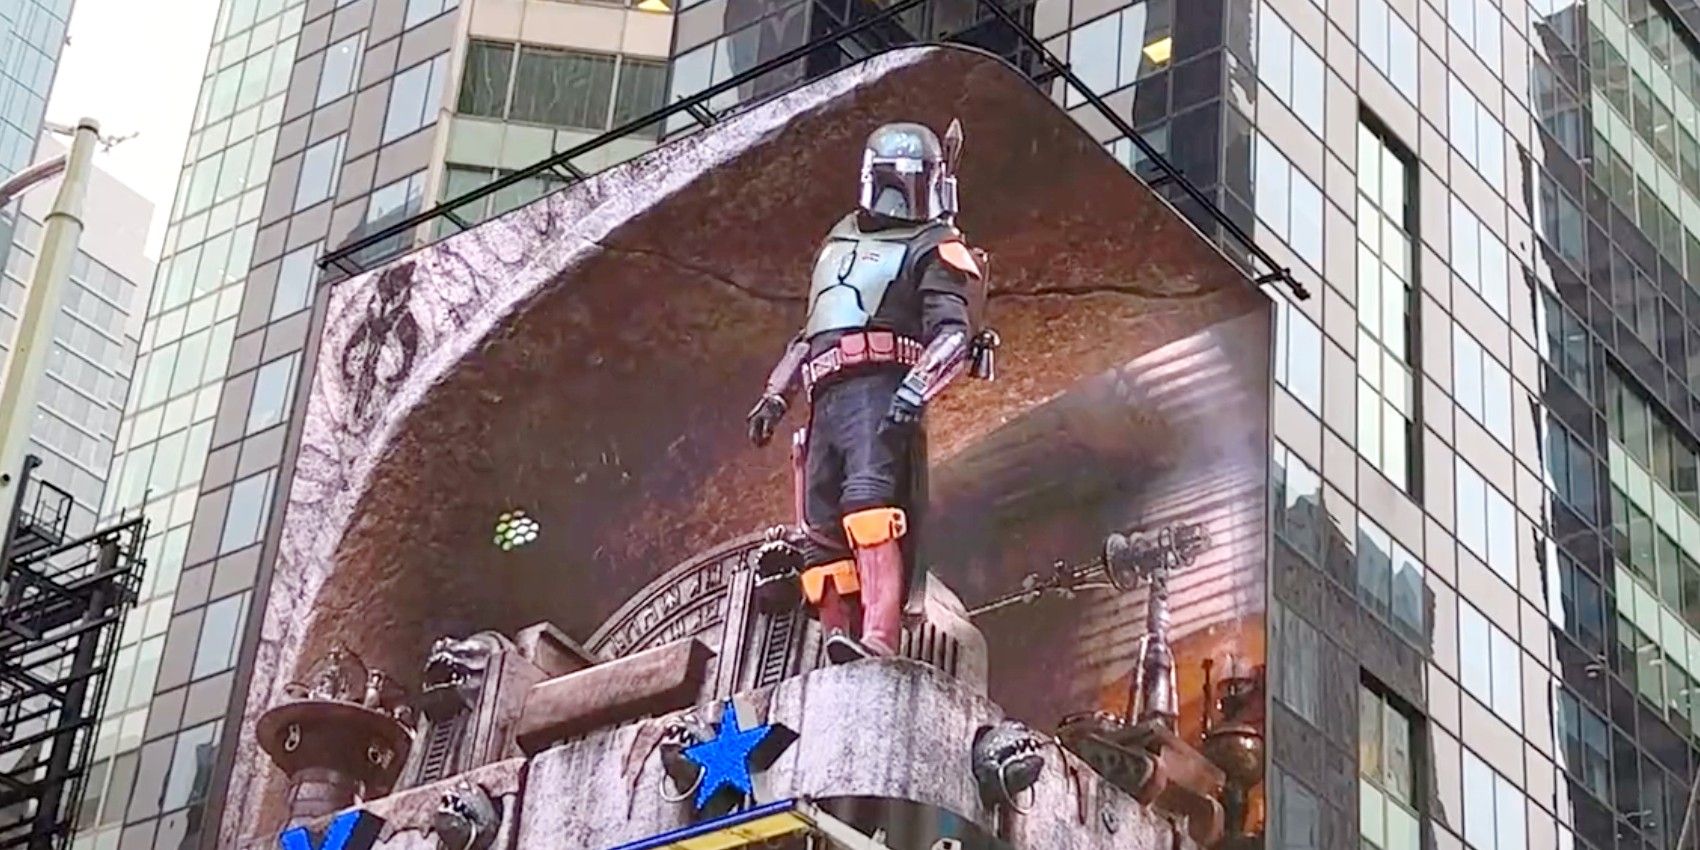 Star Wars The Book of Boba Fett gets a mindblowing 3D billboard